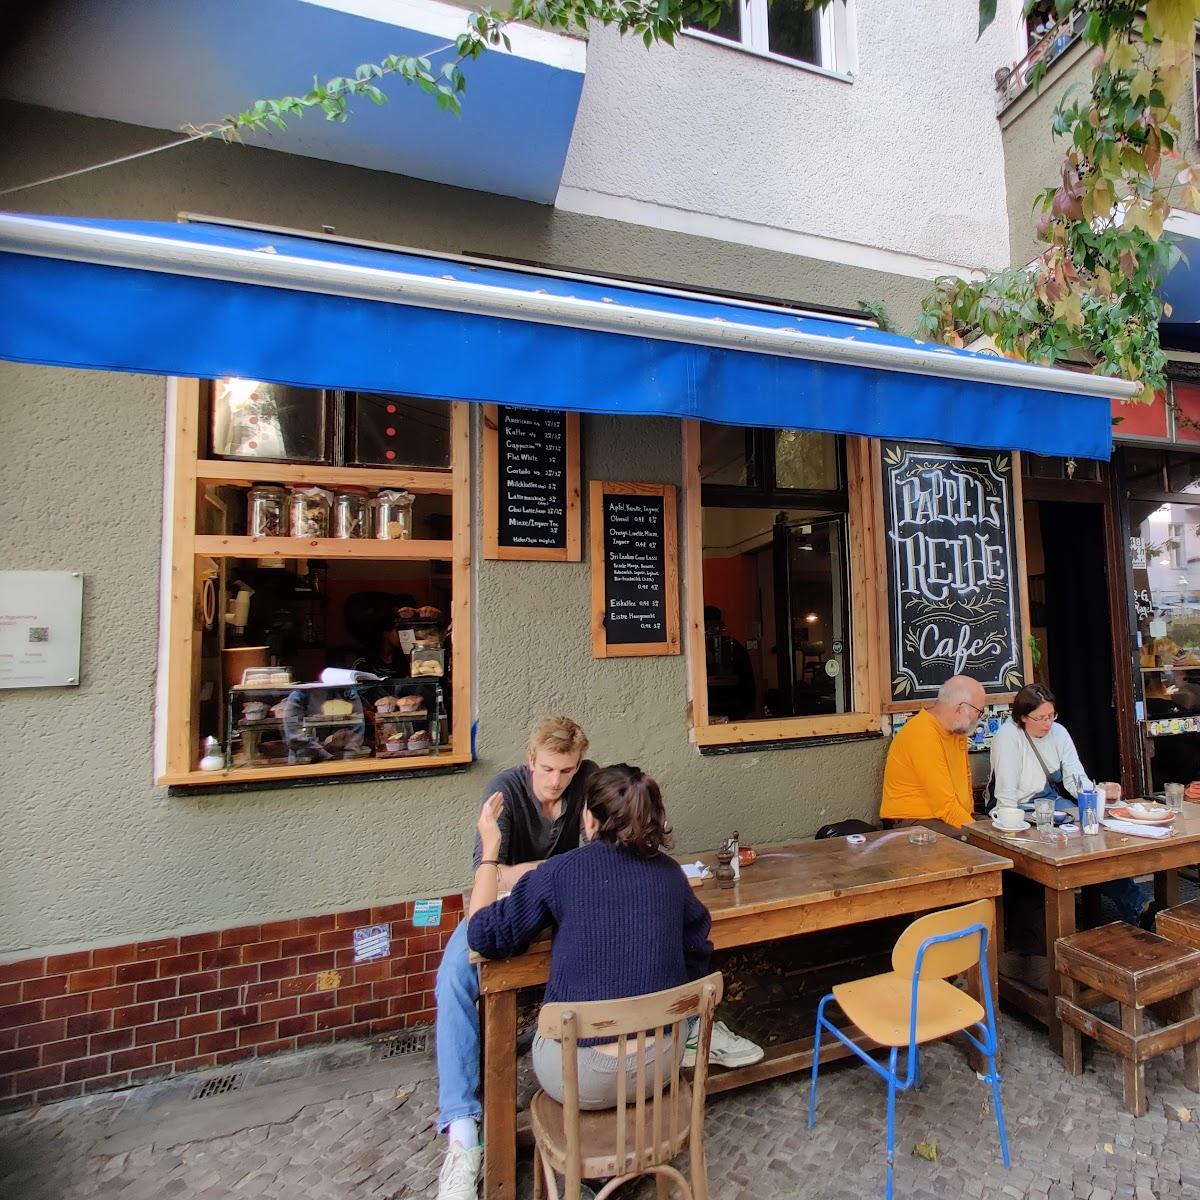 Restaurant "Pappelreihe" in Berlin